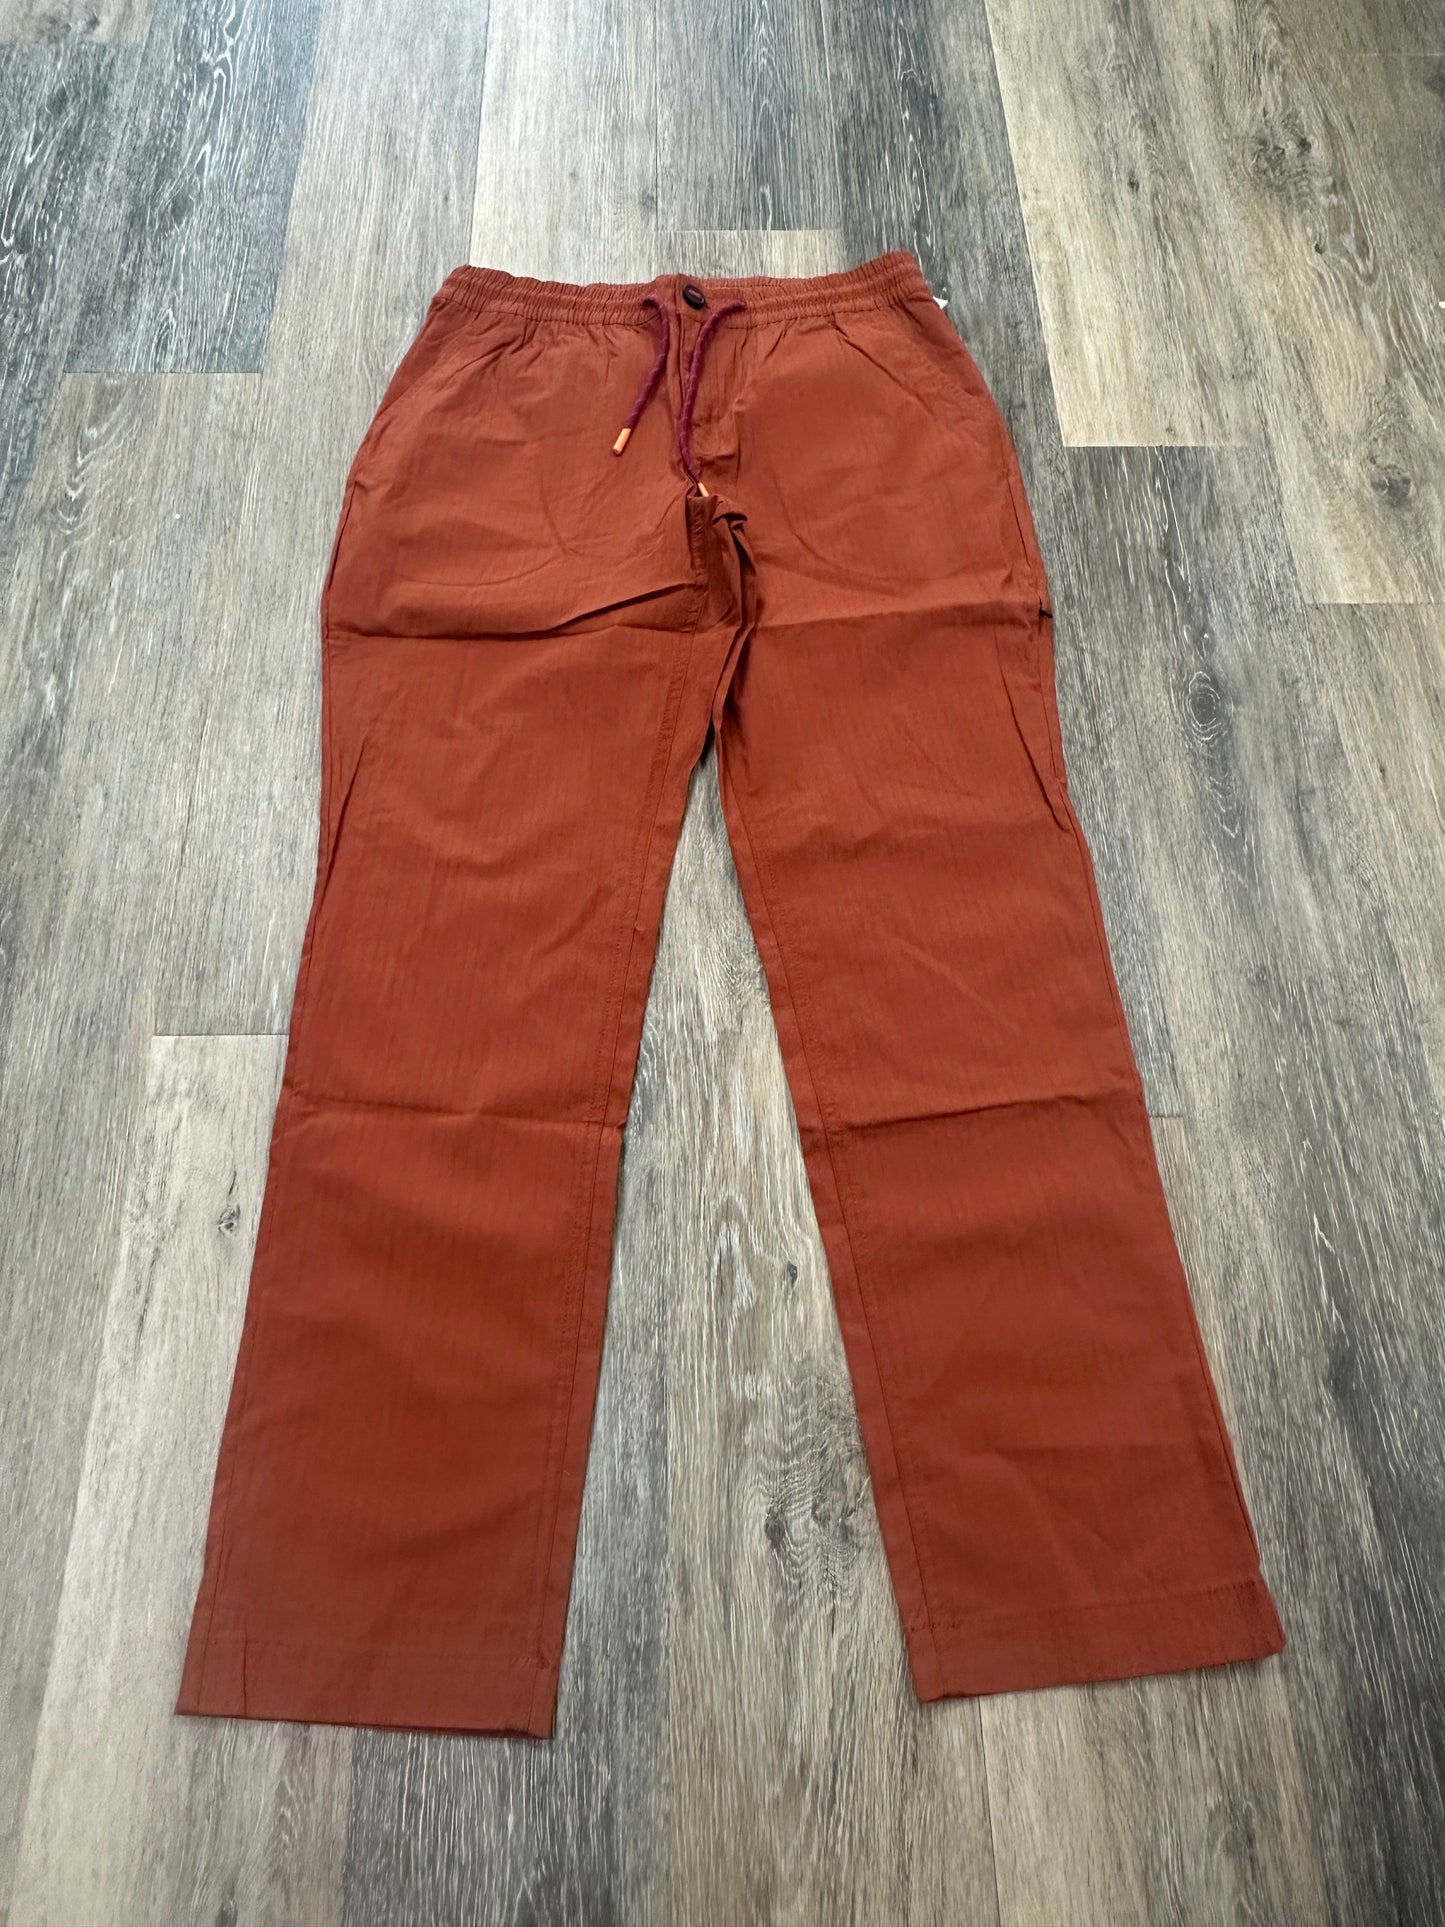 Orange Athletic Pants Cotopaxi, Size M